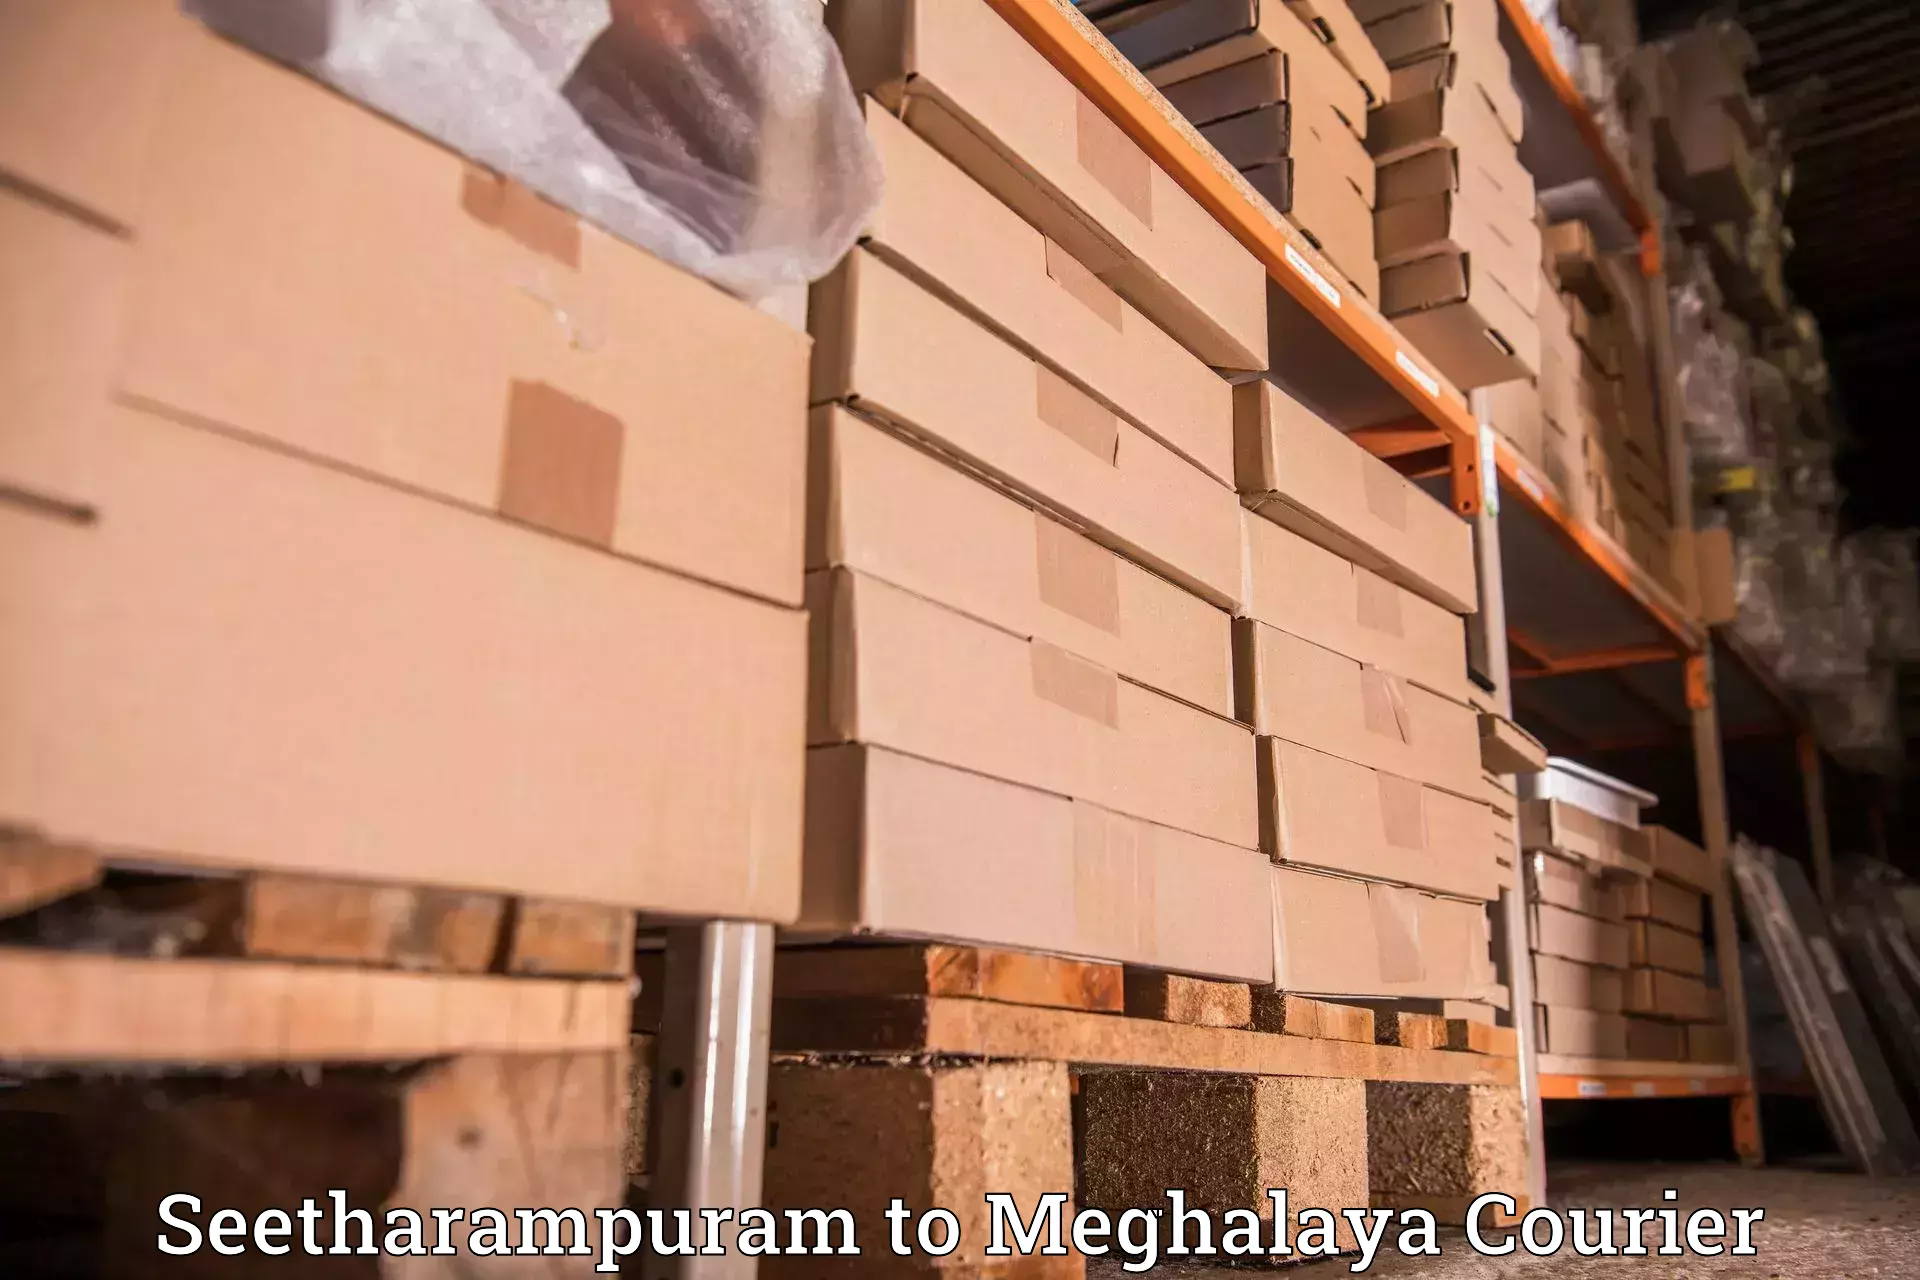 Individual parcel service Seetharampuram to Shillong